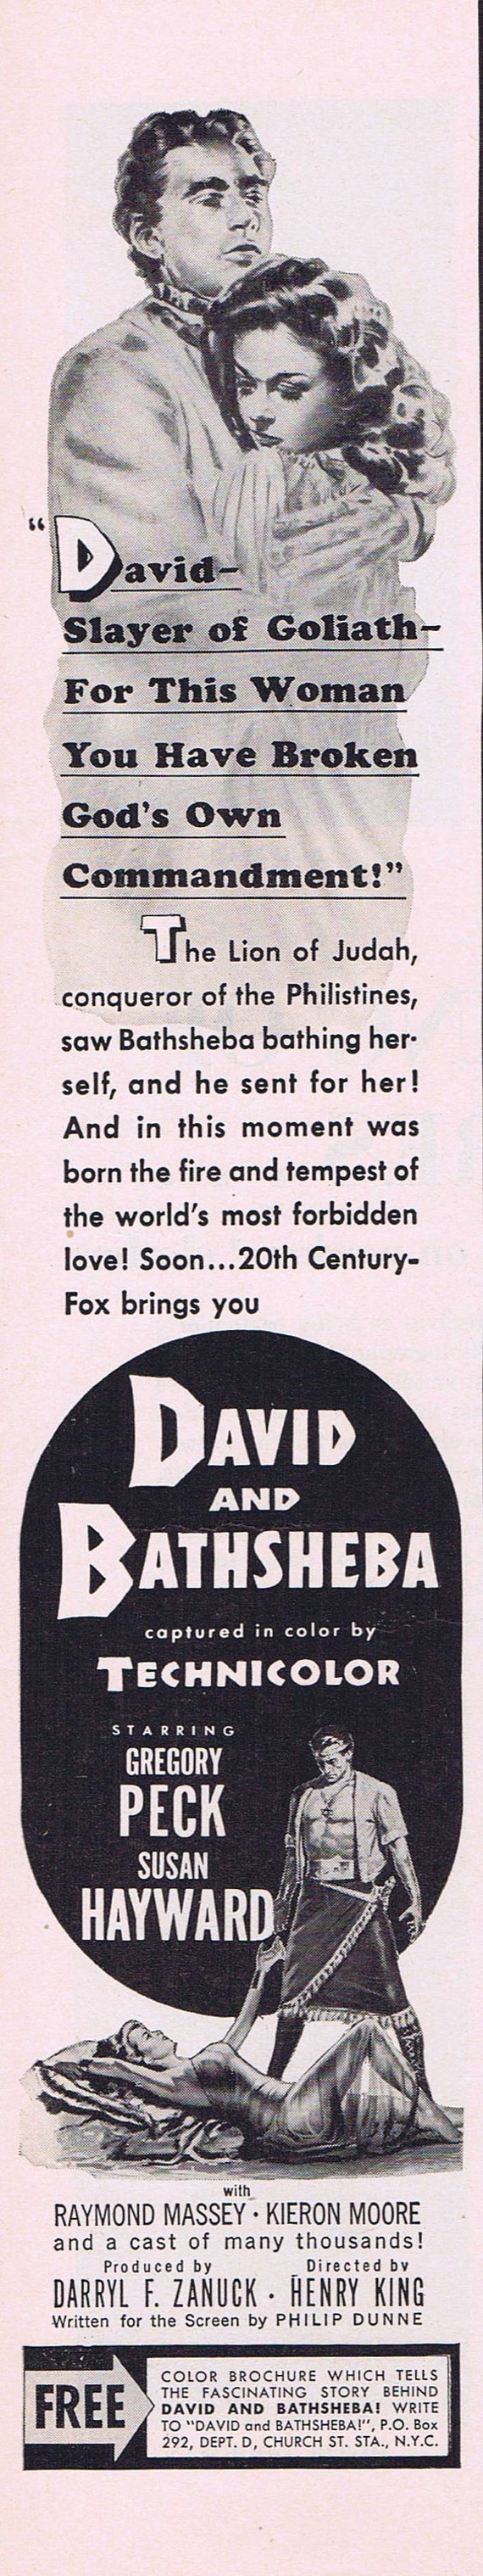 David and Bathsheba 1951 Original Vintage Small Movie Ad with Gregory Peck and Susan Hayward